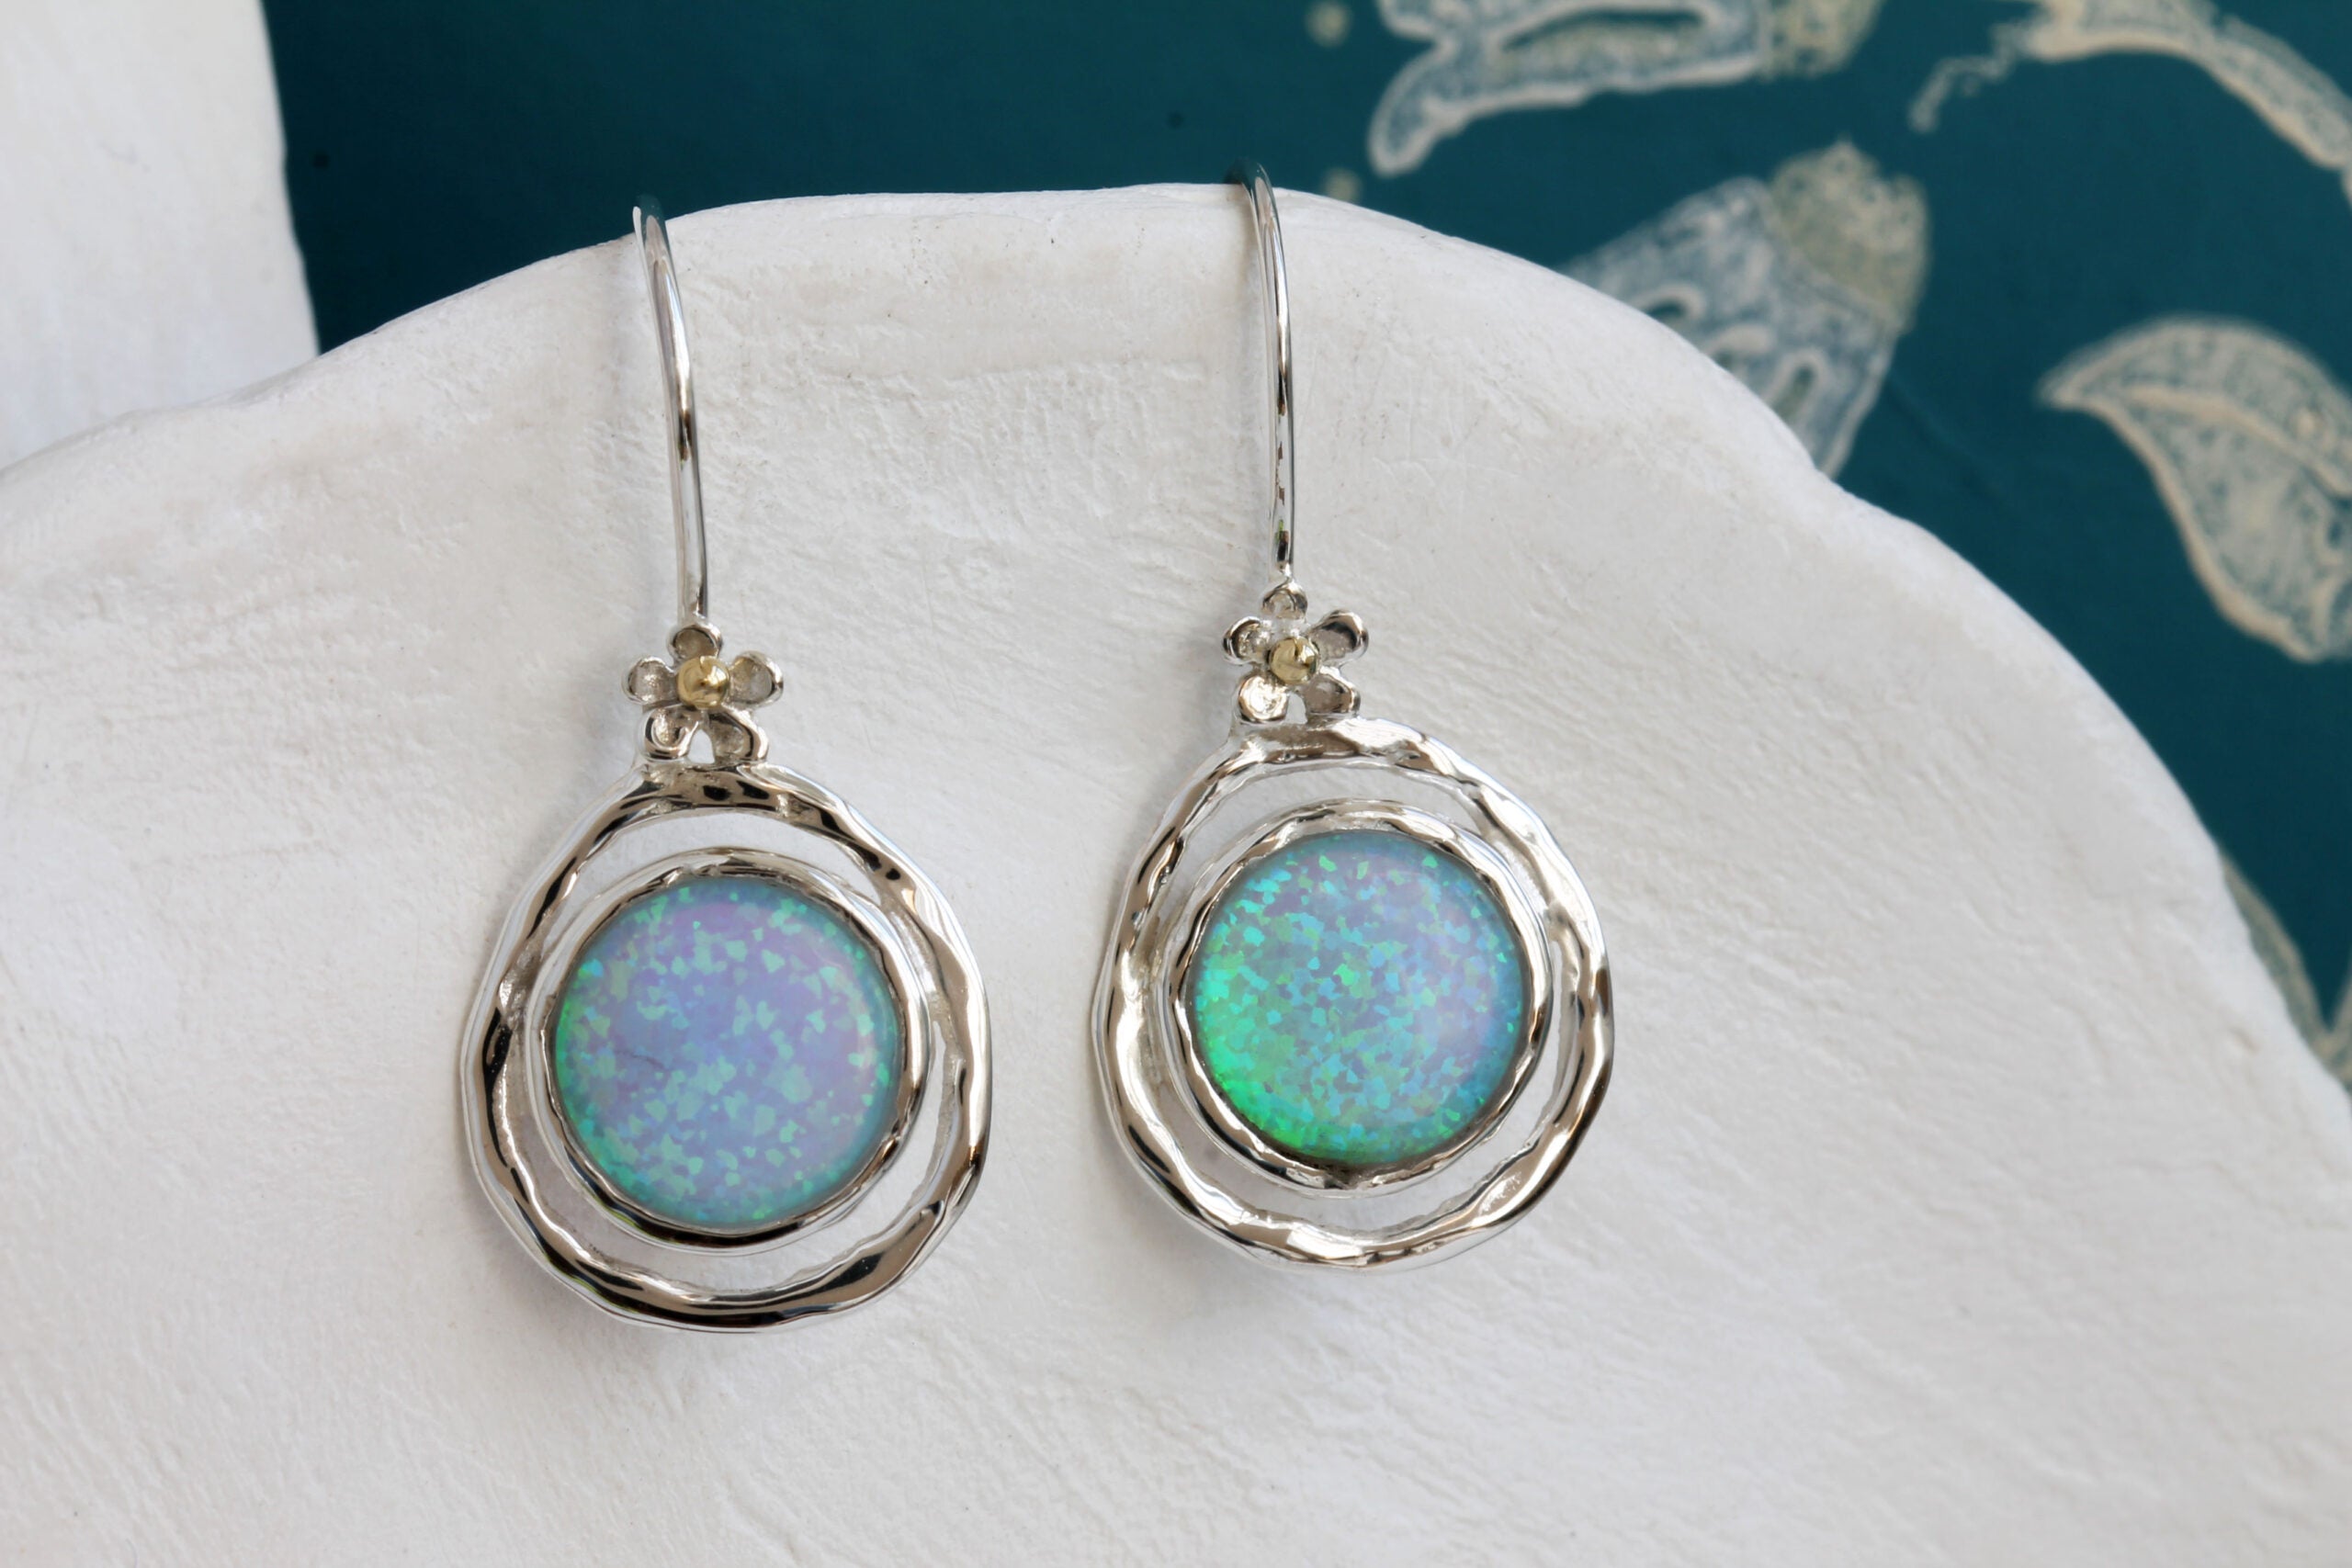 Opalite Hook Earrings - The Nancy Smillie Shop - Art, Jewellery & Designer Gifts Glasgow